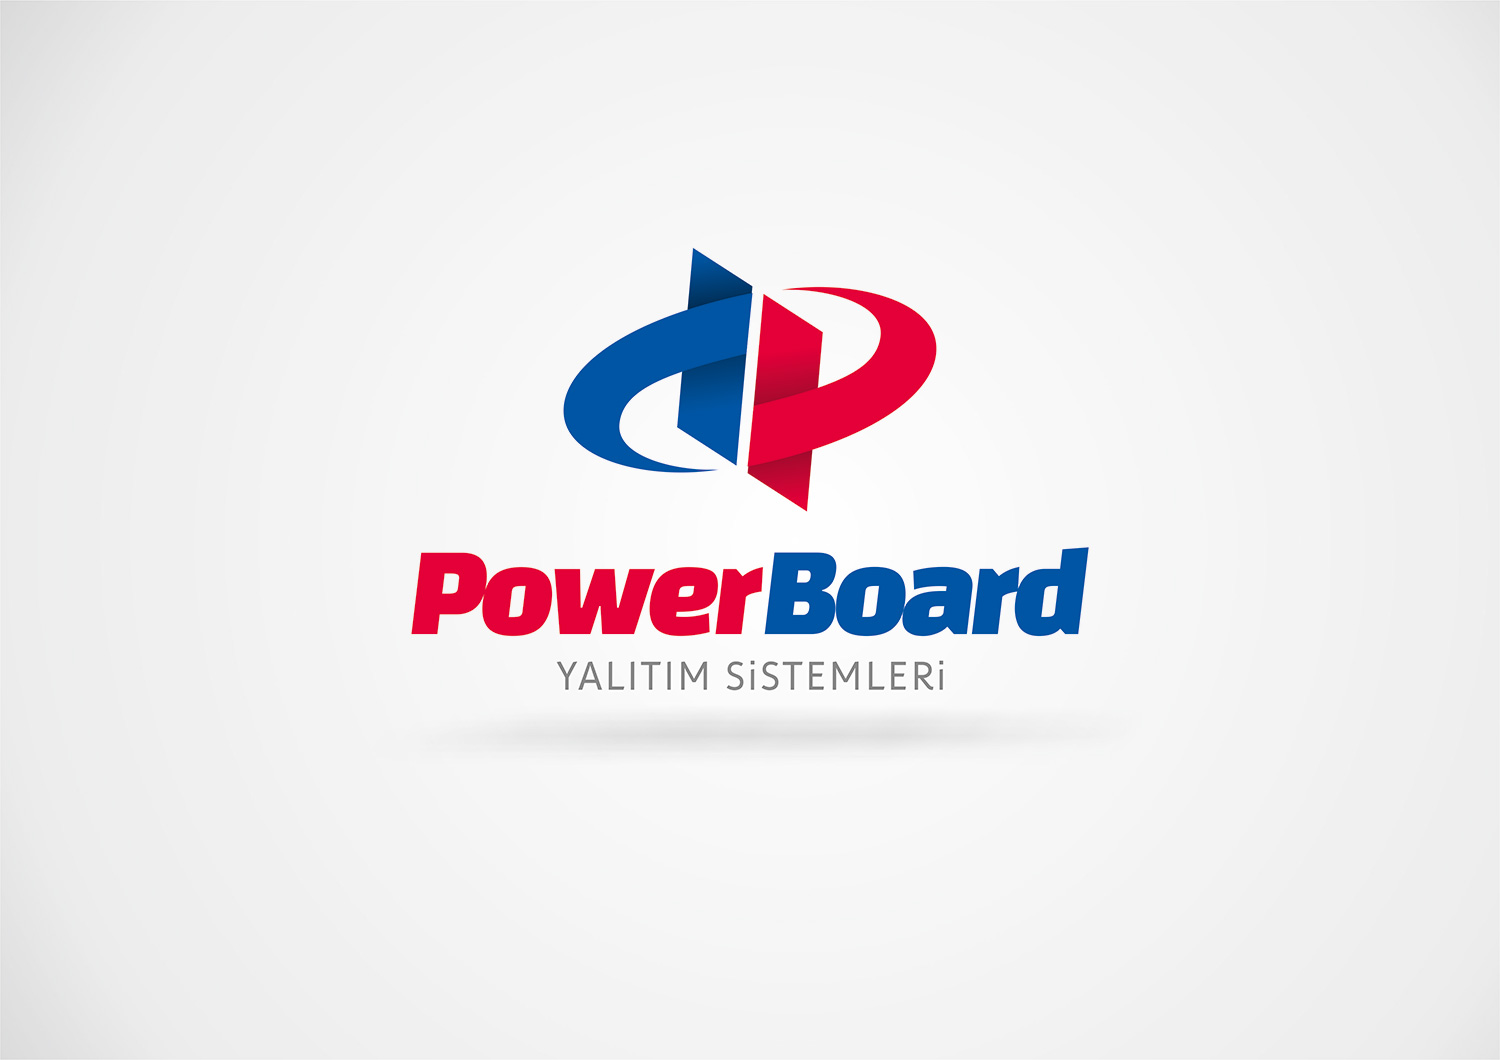 power board yalitim elazig logo